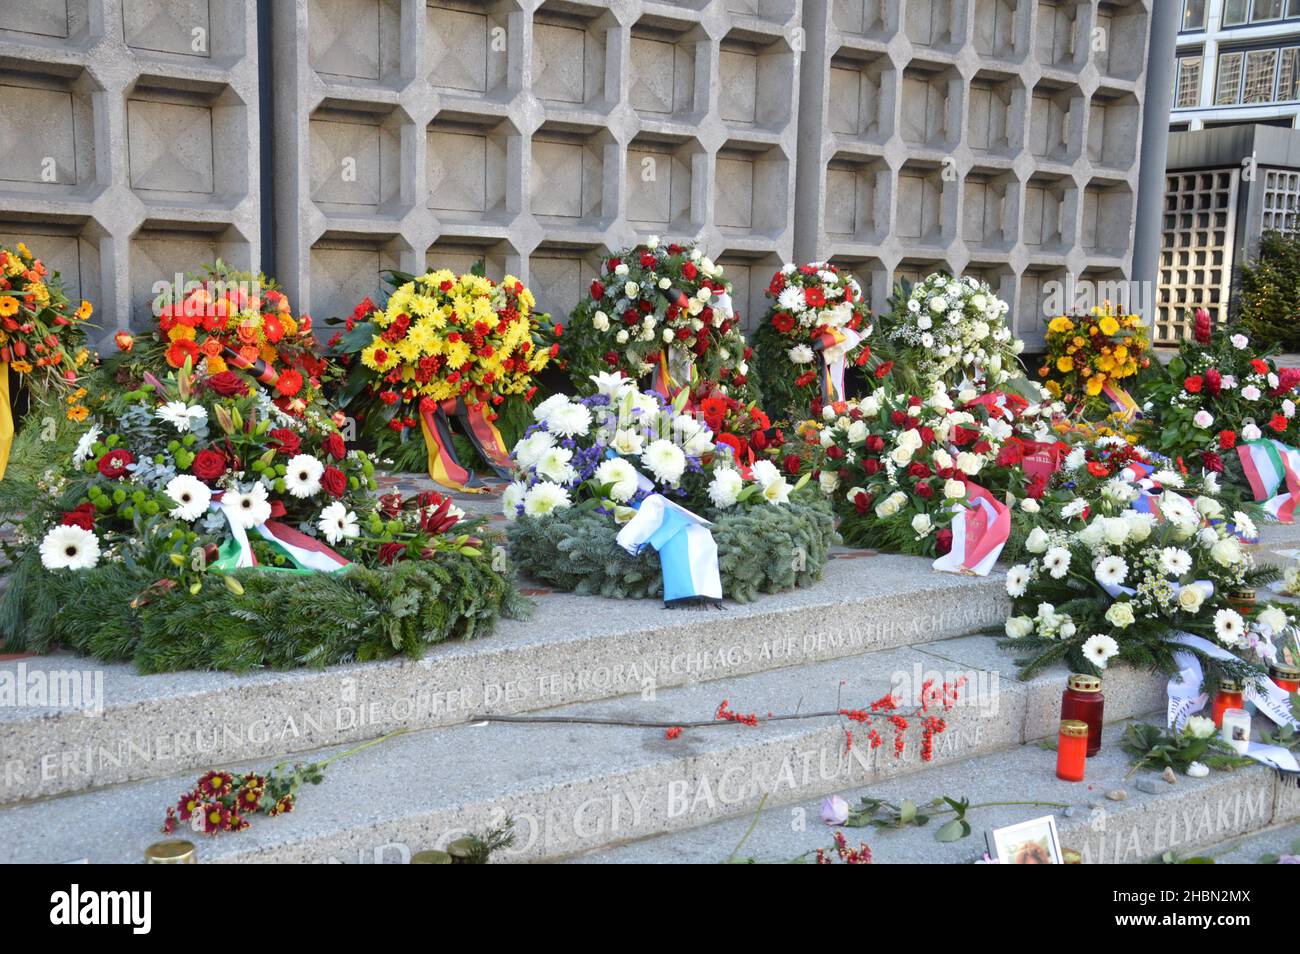 Memoriale per le 13 vittime dell'attacco terroristico islamico alla Breitscheidplatz di Berlino, Germania - 20 dicembre 2021. Foto Stock